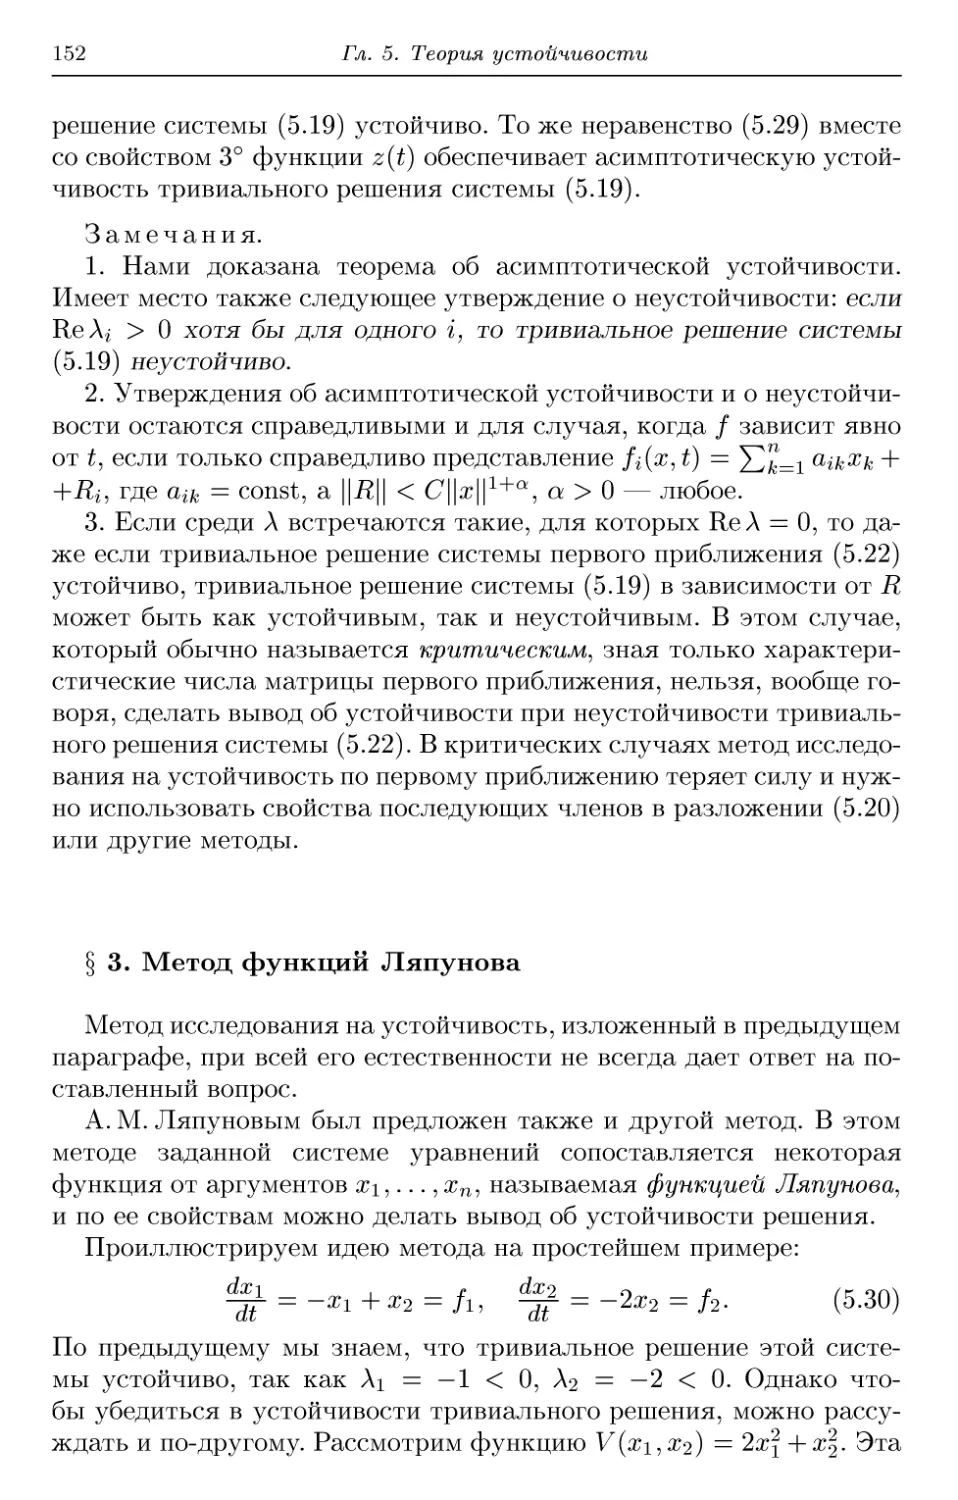 § 3. Метод функций Ляпунова